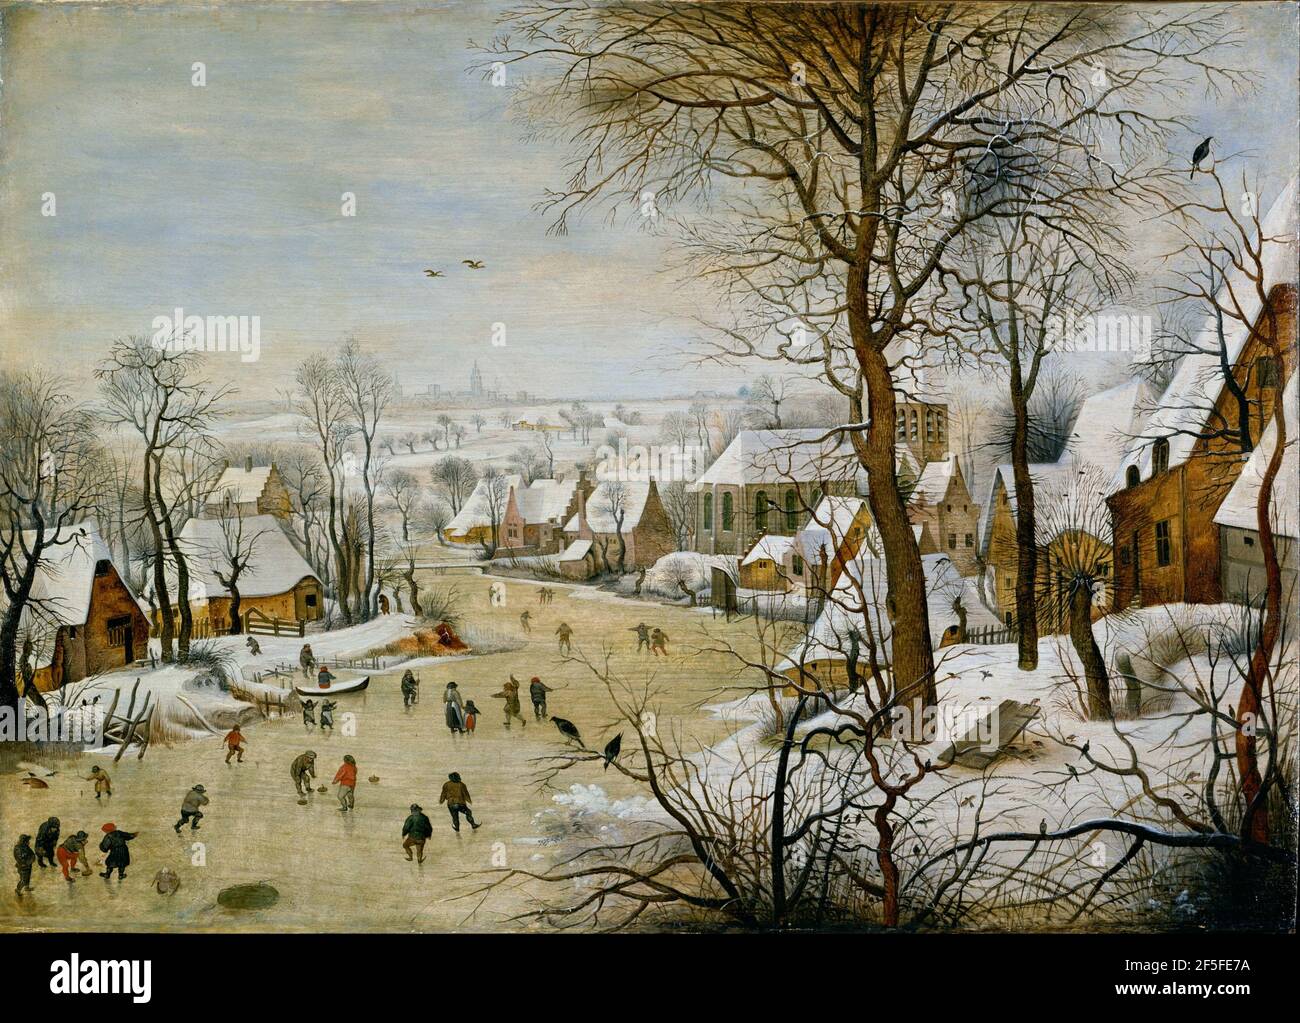 Titre: Paysage d'hiver avec des patineurs et un piège à oiseaux Créateur: Pieter Bruegel l'ancien Date: 1565 Moyen: Huile sur panneau Dimensions: 37x55.5 cms lieu: Musees Royaux des Beaux-Arts de Belgique, Bruxelles, Belgique Banque D'Images